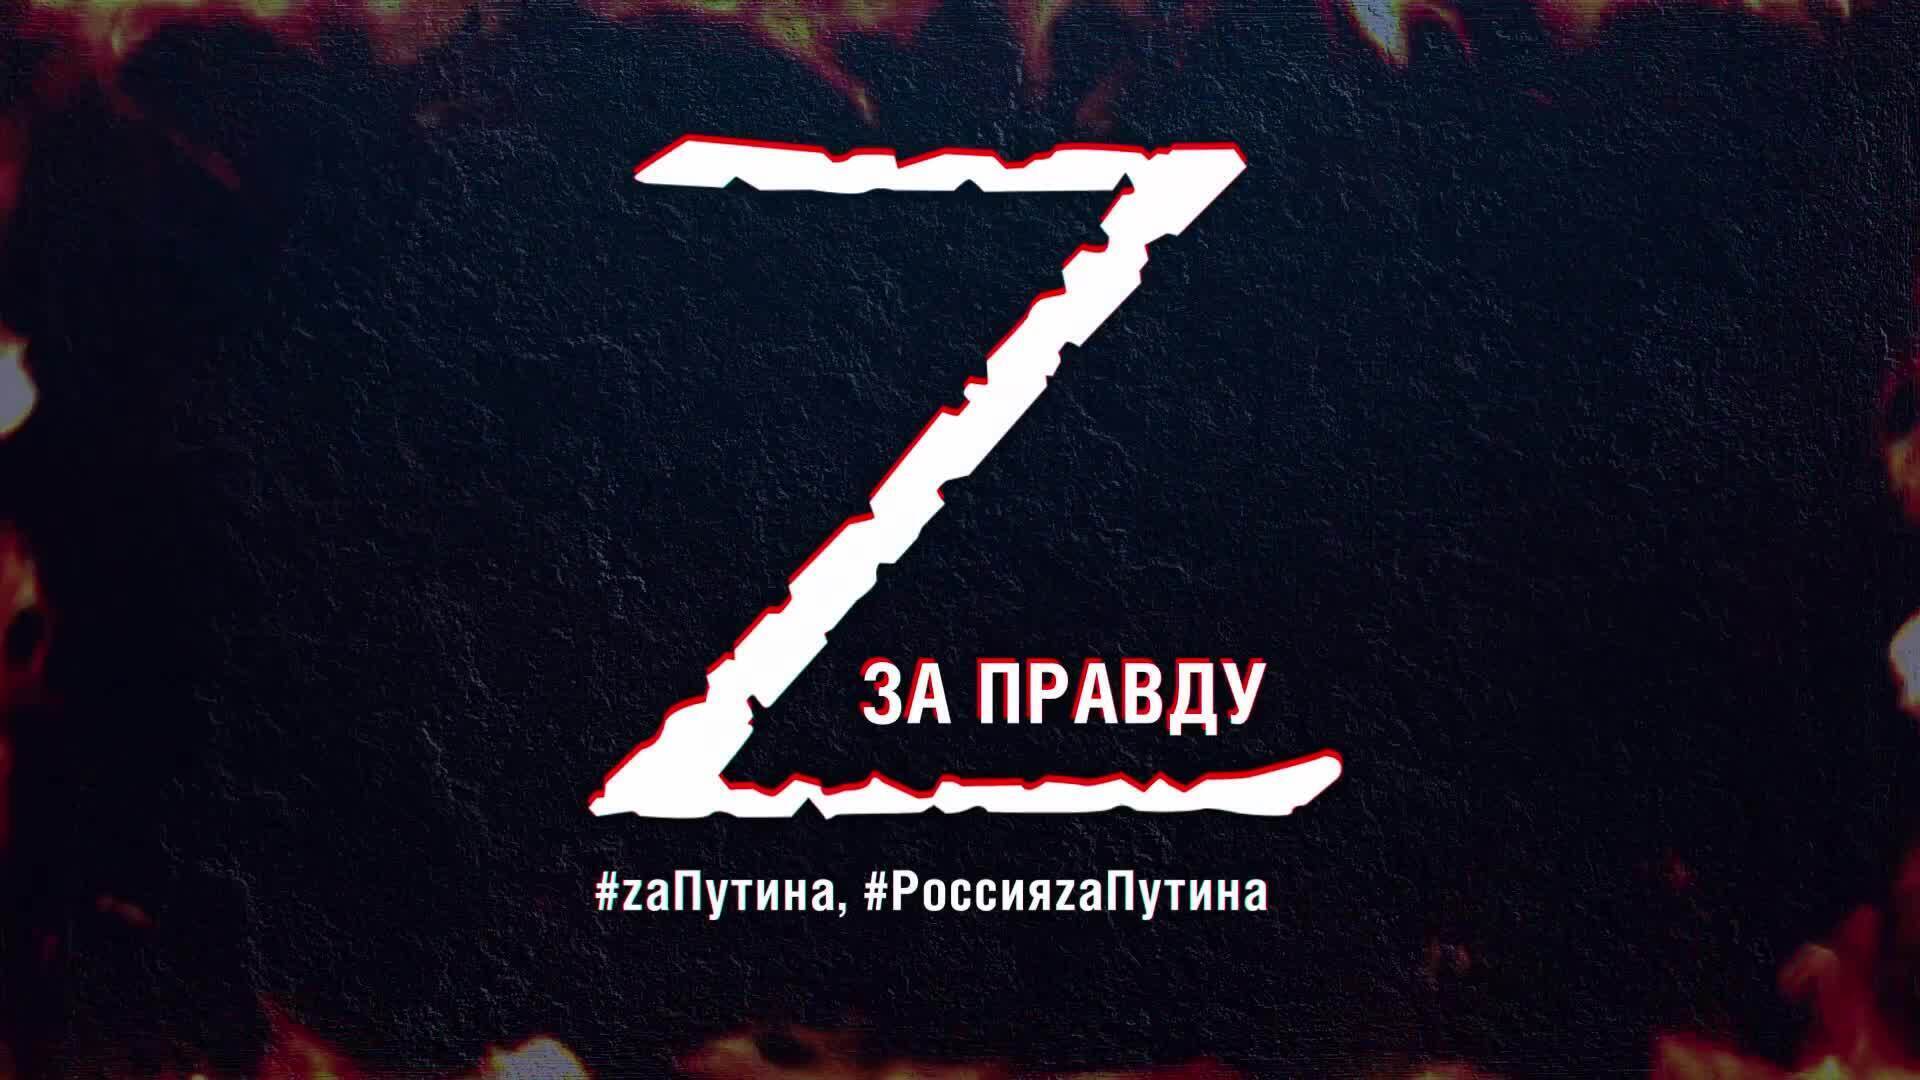 Правда 5 букв. Z специальная операция логотип. Аватарка спецопераций. Эмблема спецоперации на Украине.